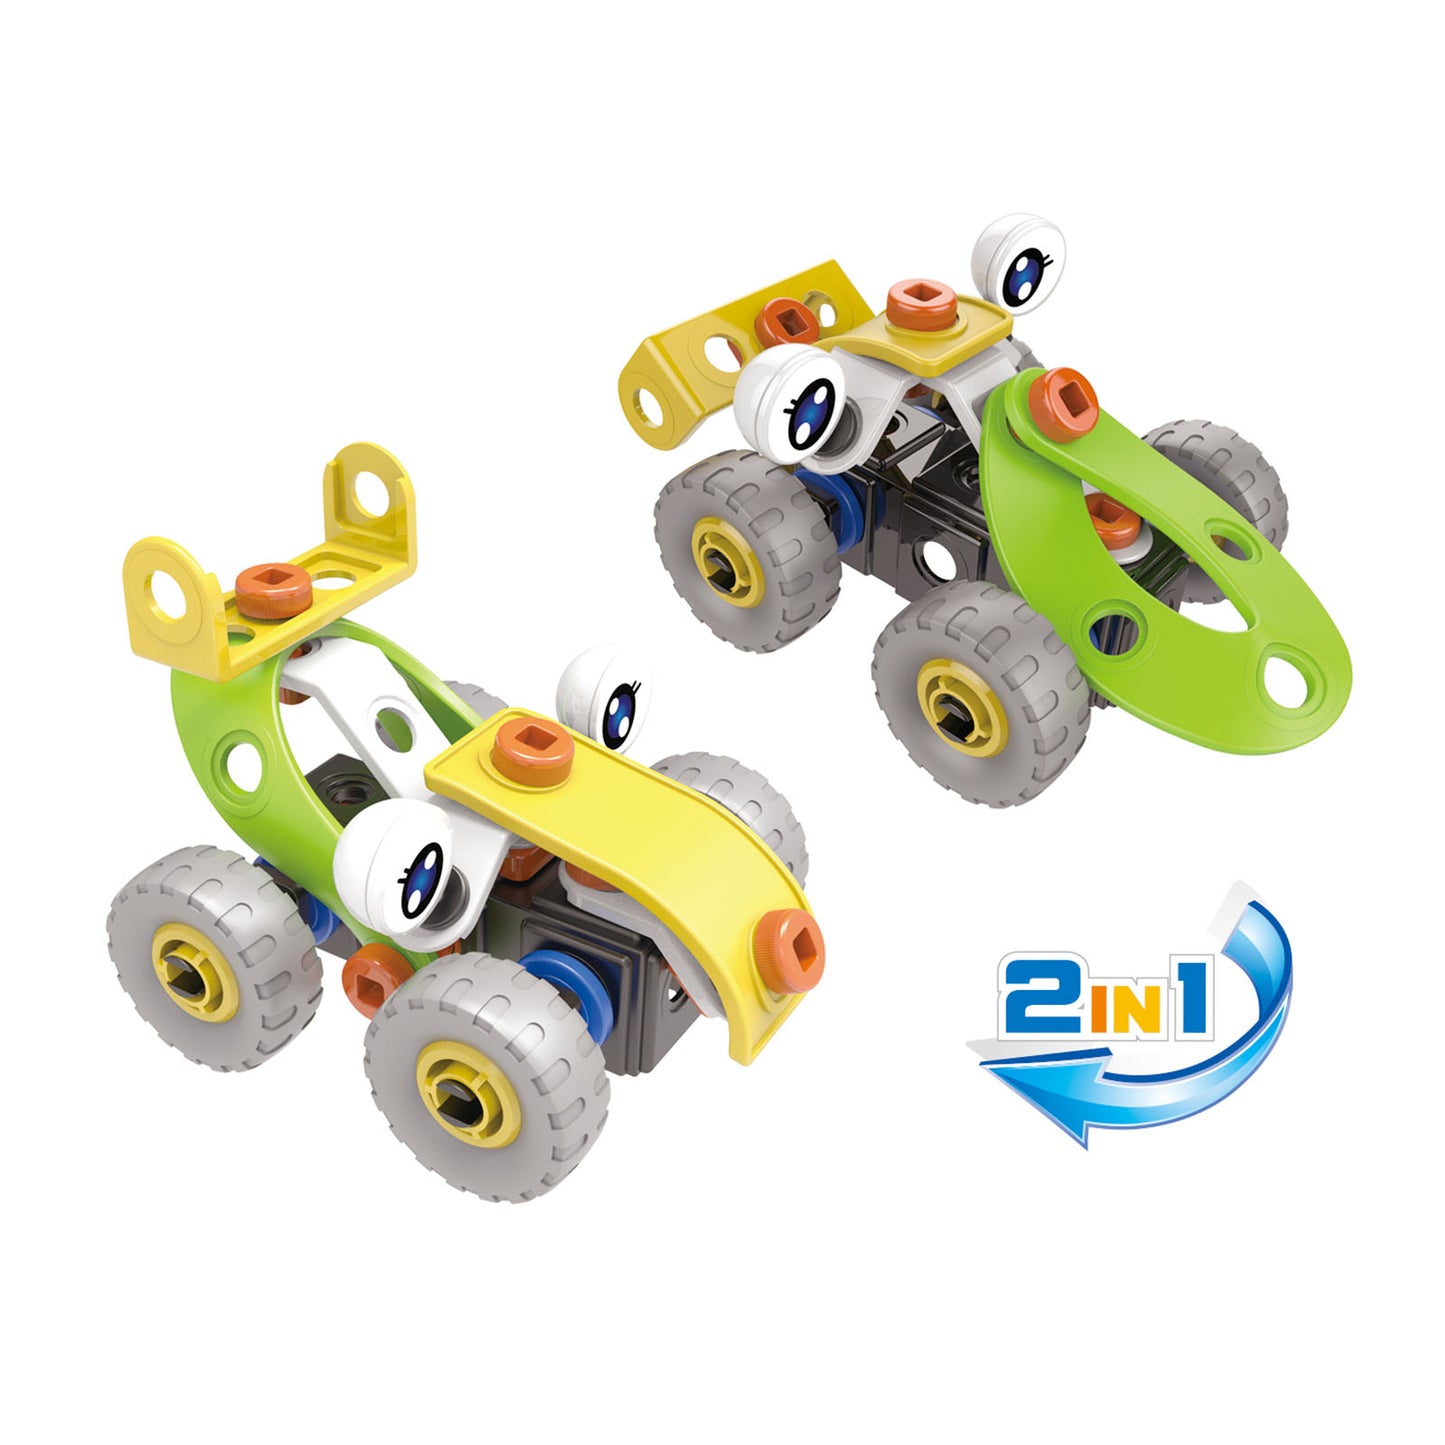 NOOLY STEM Toys for Kids, 2 IN 1 Building Toys Kit J-7747